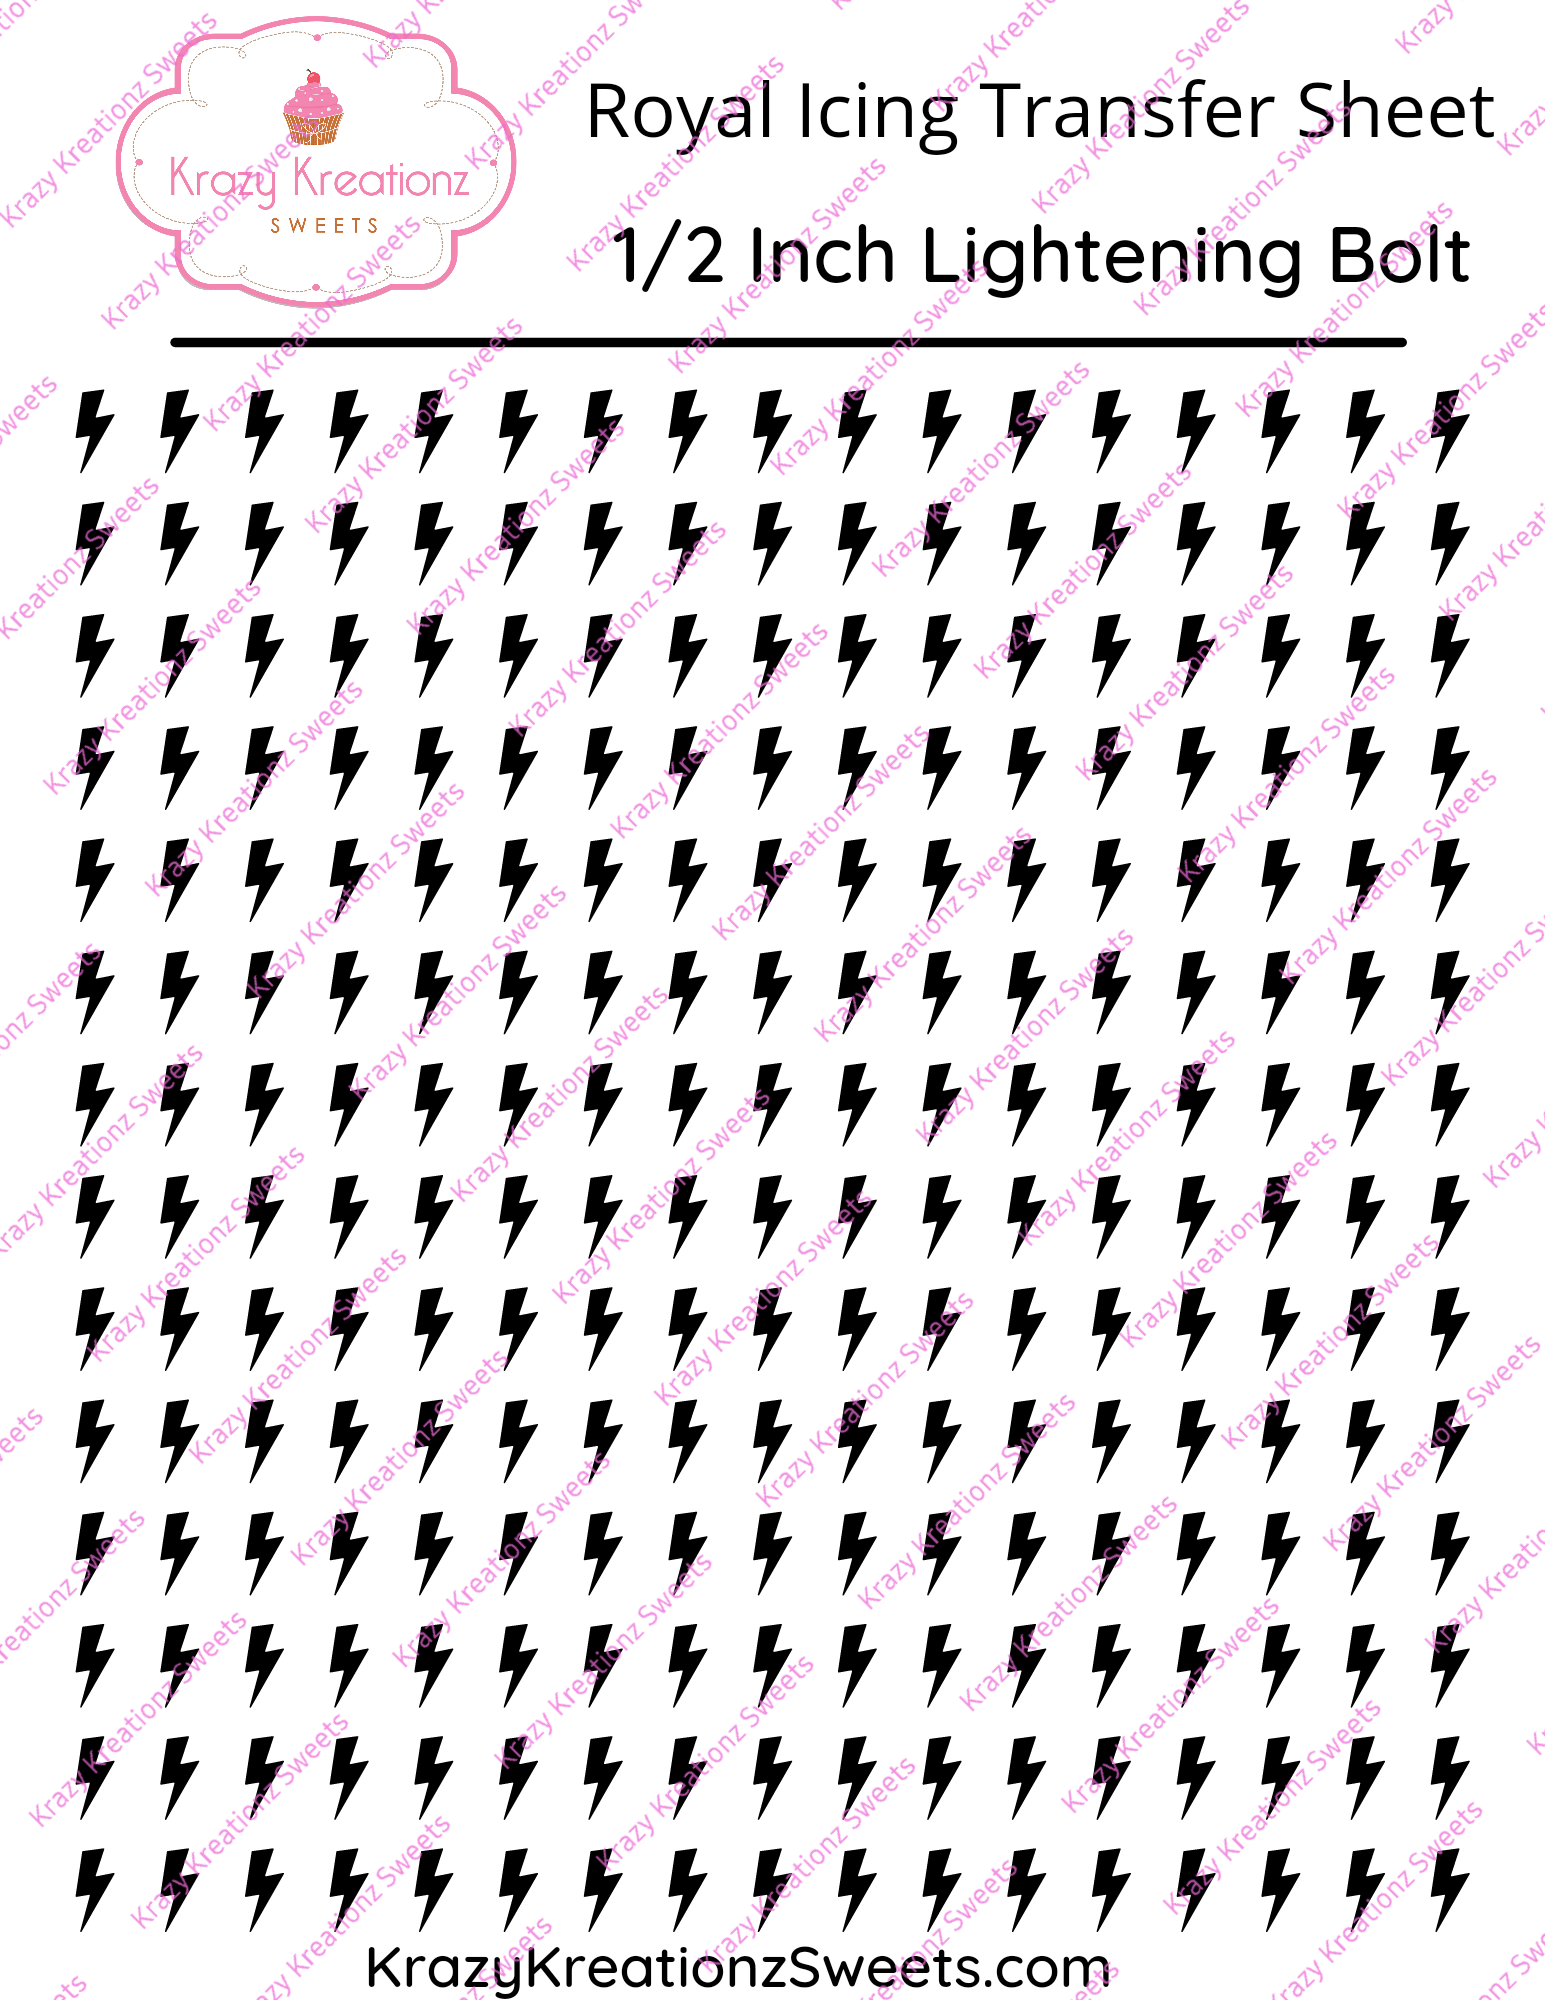 1/2 inch Lightening Bolt Royal Icing Transfer Sheet